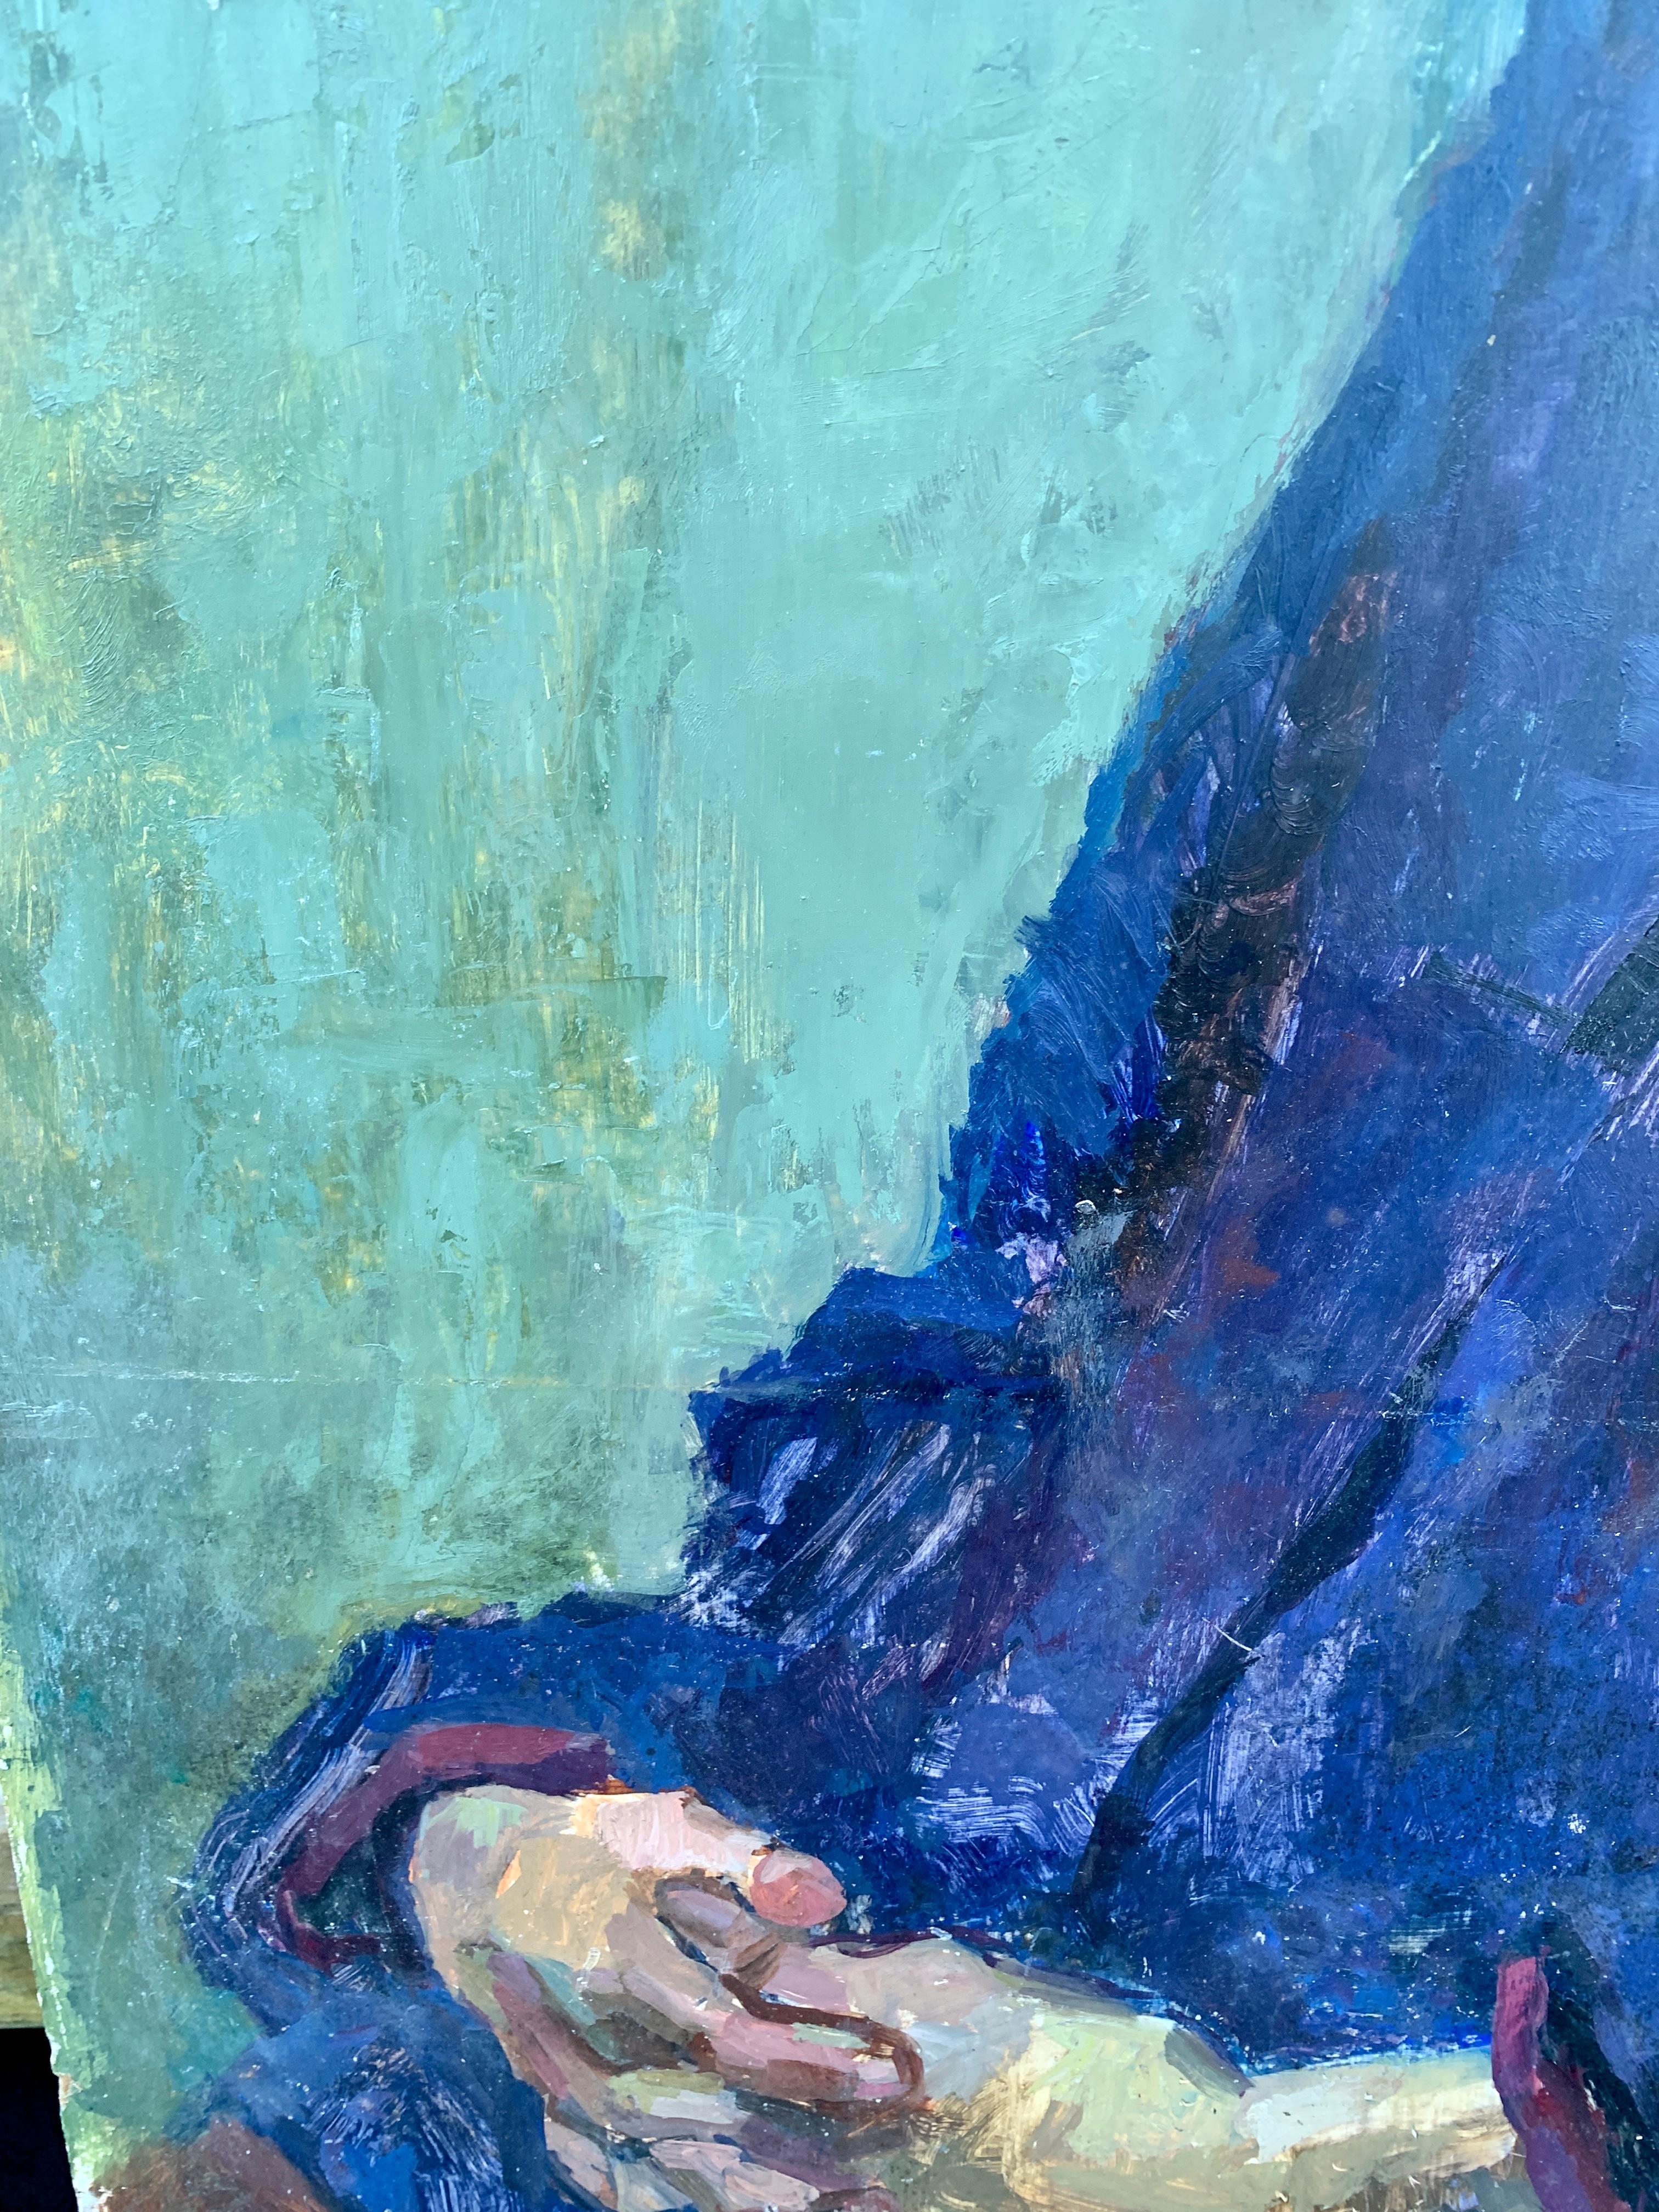 1950's Mid Century modernes englisches Ölporträt einer sitzenden Frau in einem Interieur

Der Künstler war ein Porträt- und Figurenmaler, der in den 1950er und 1960er Jahren tätig war

Großartiger Einsatz von Farbe und abstrakten